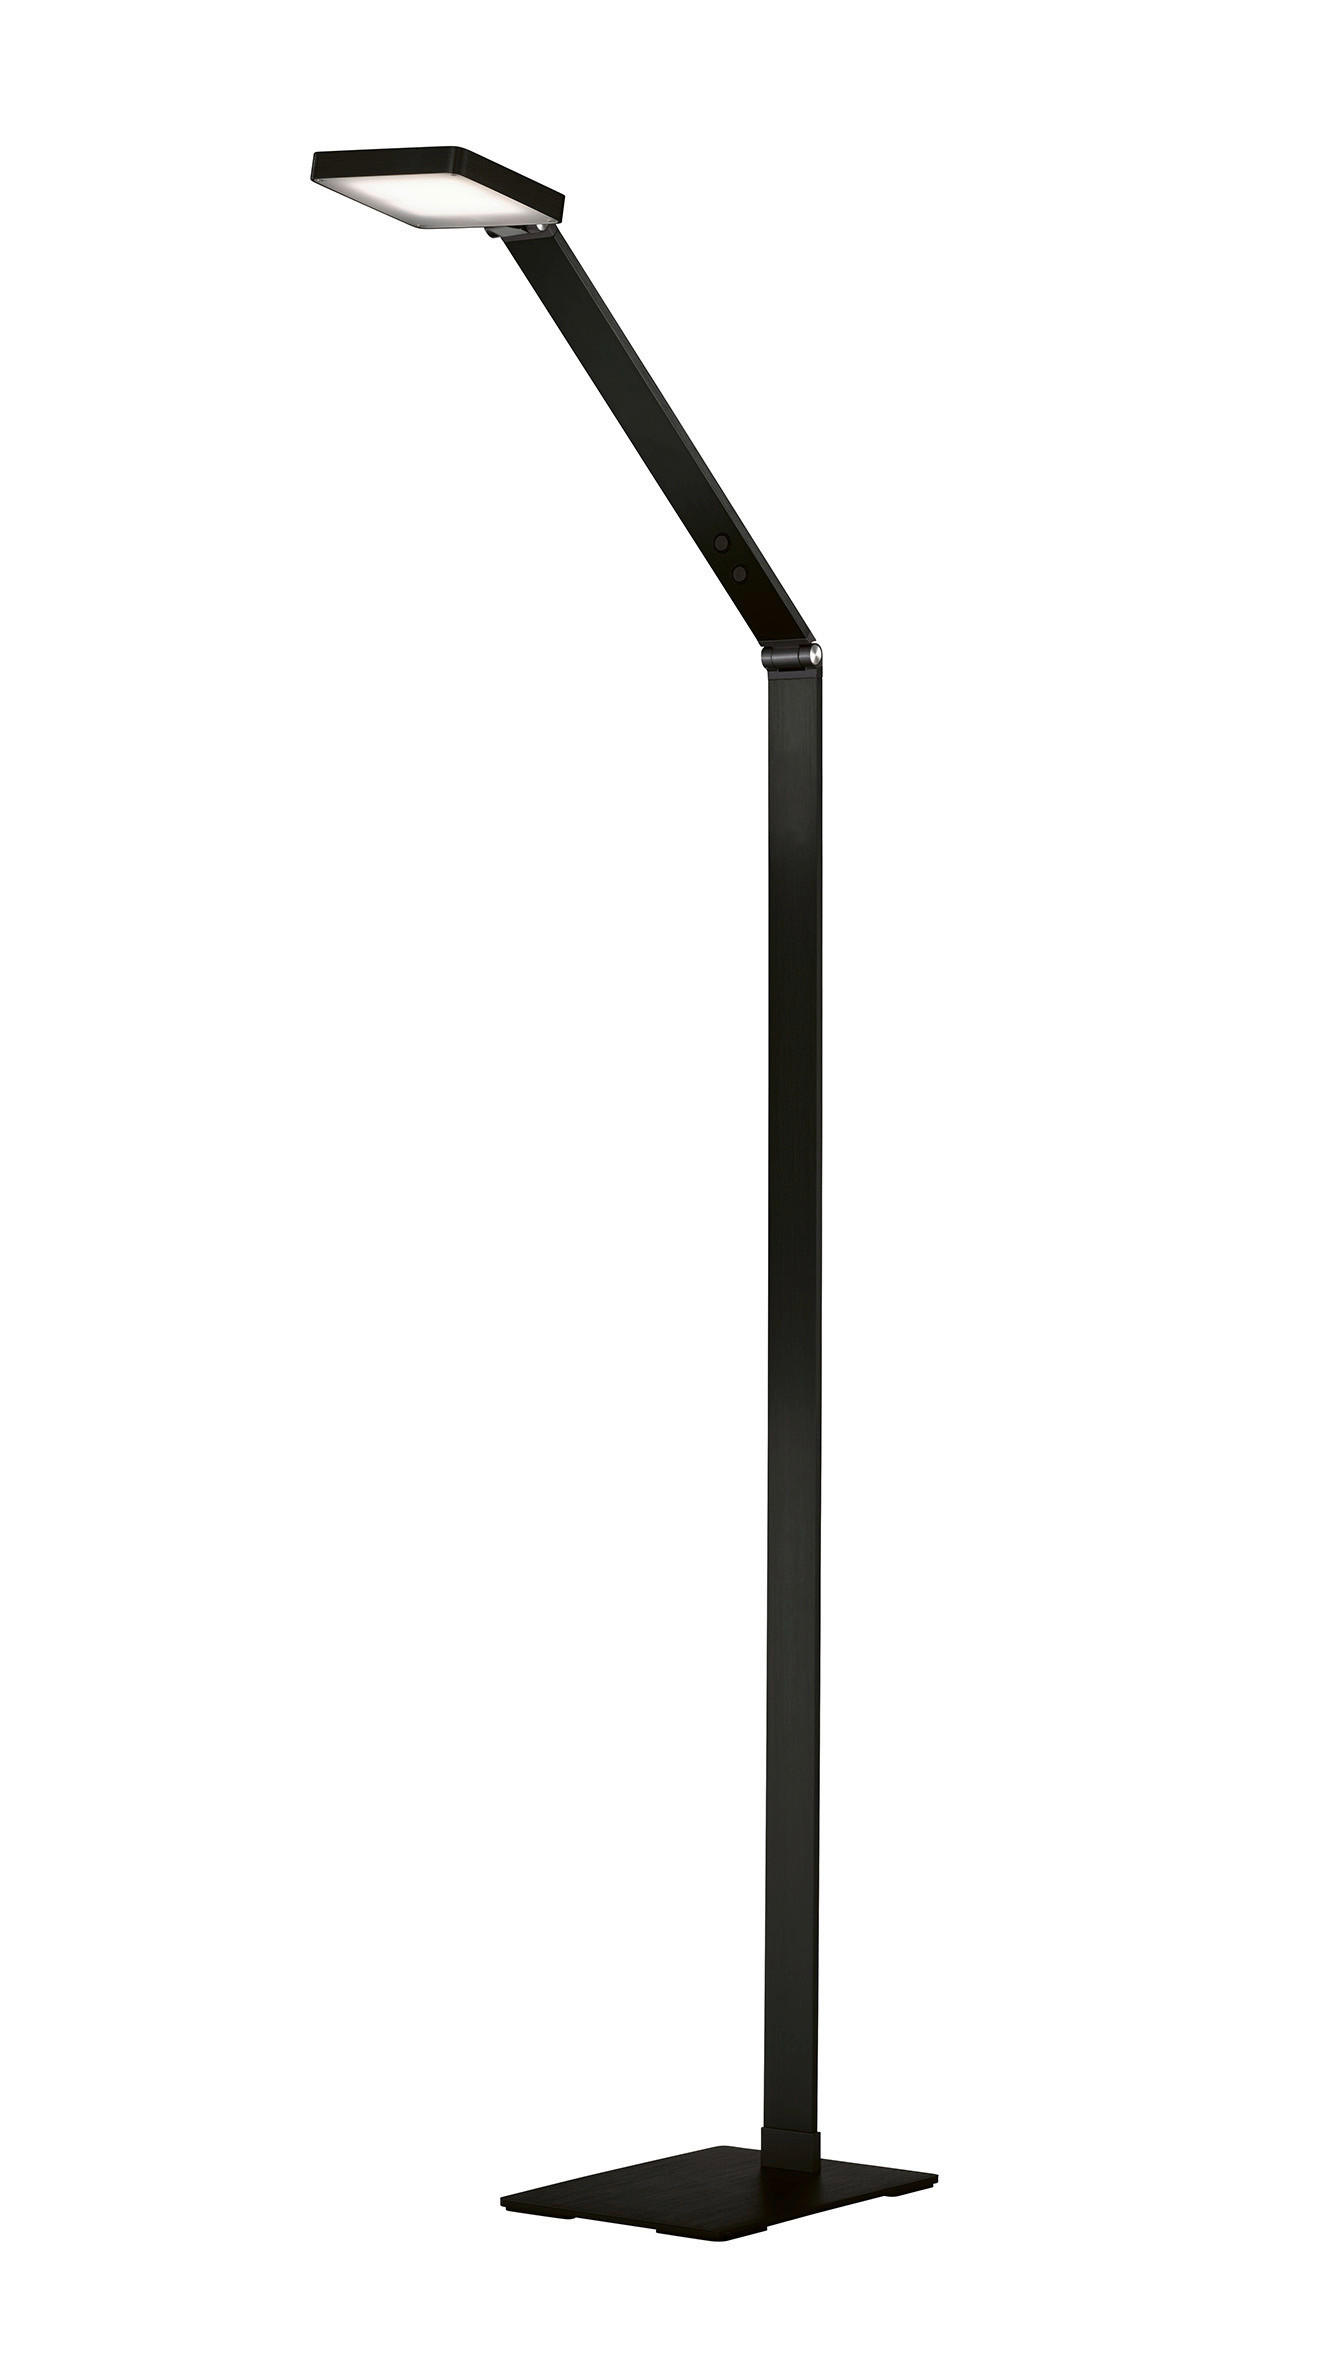 LED-STEHLEUCHTE  17/139,5 cm   - Schwarz, Design, Metall (17/139,5cm) - Fischer & Honsel